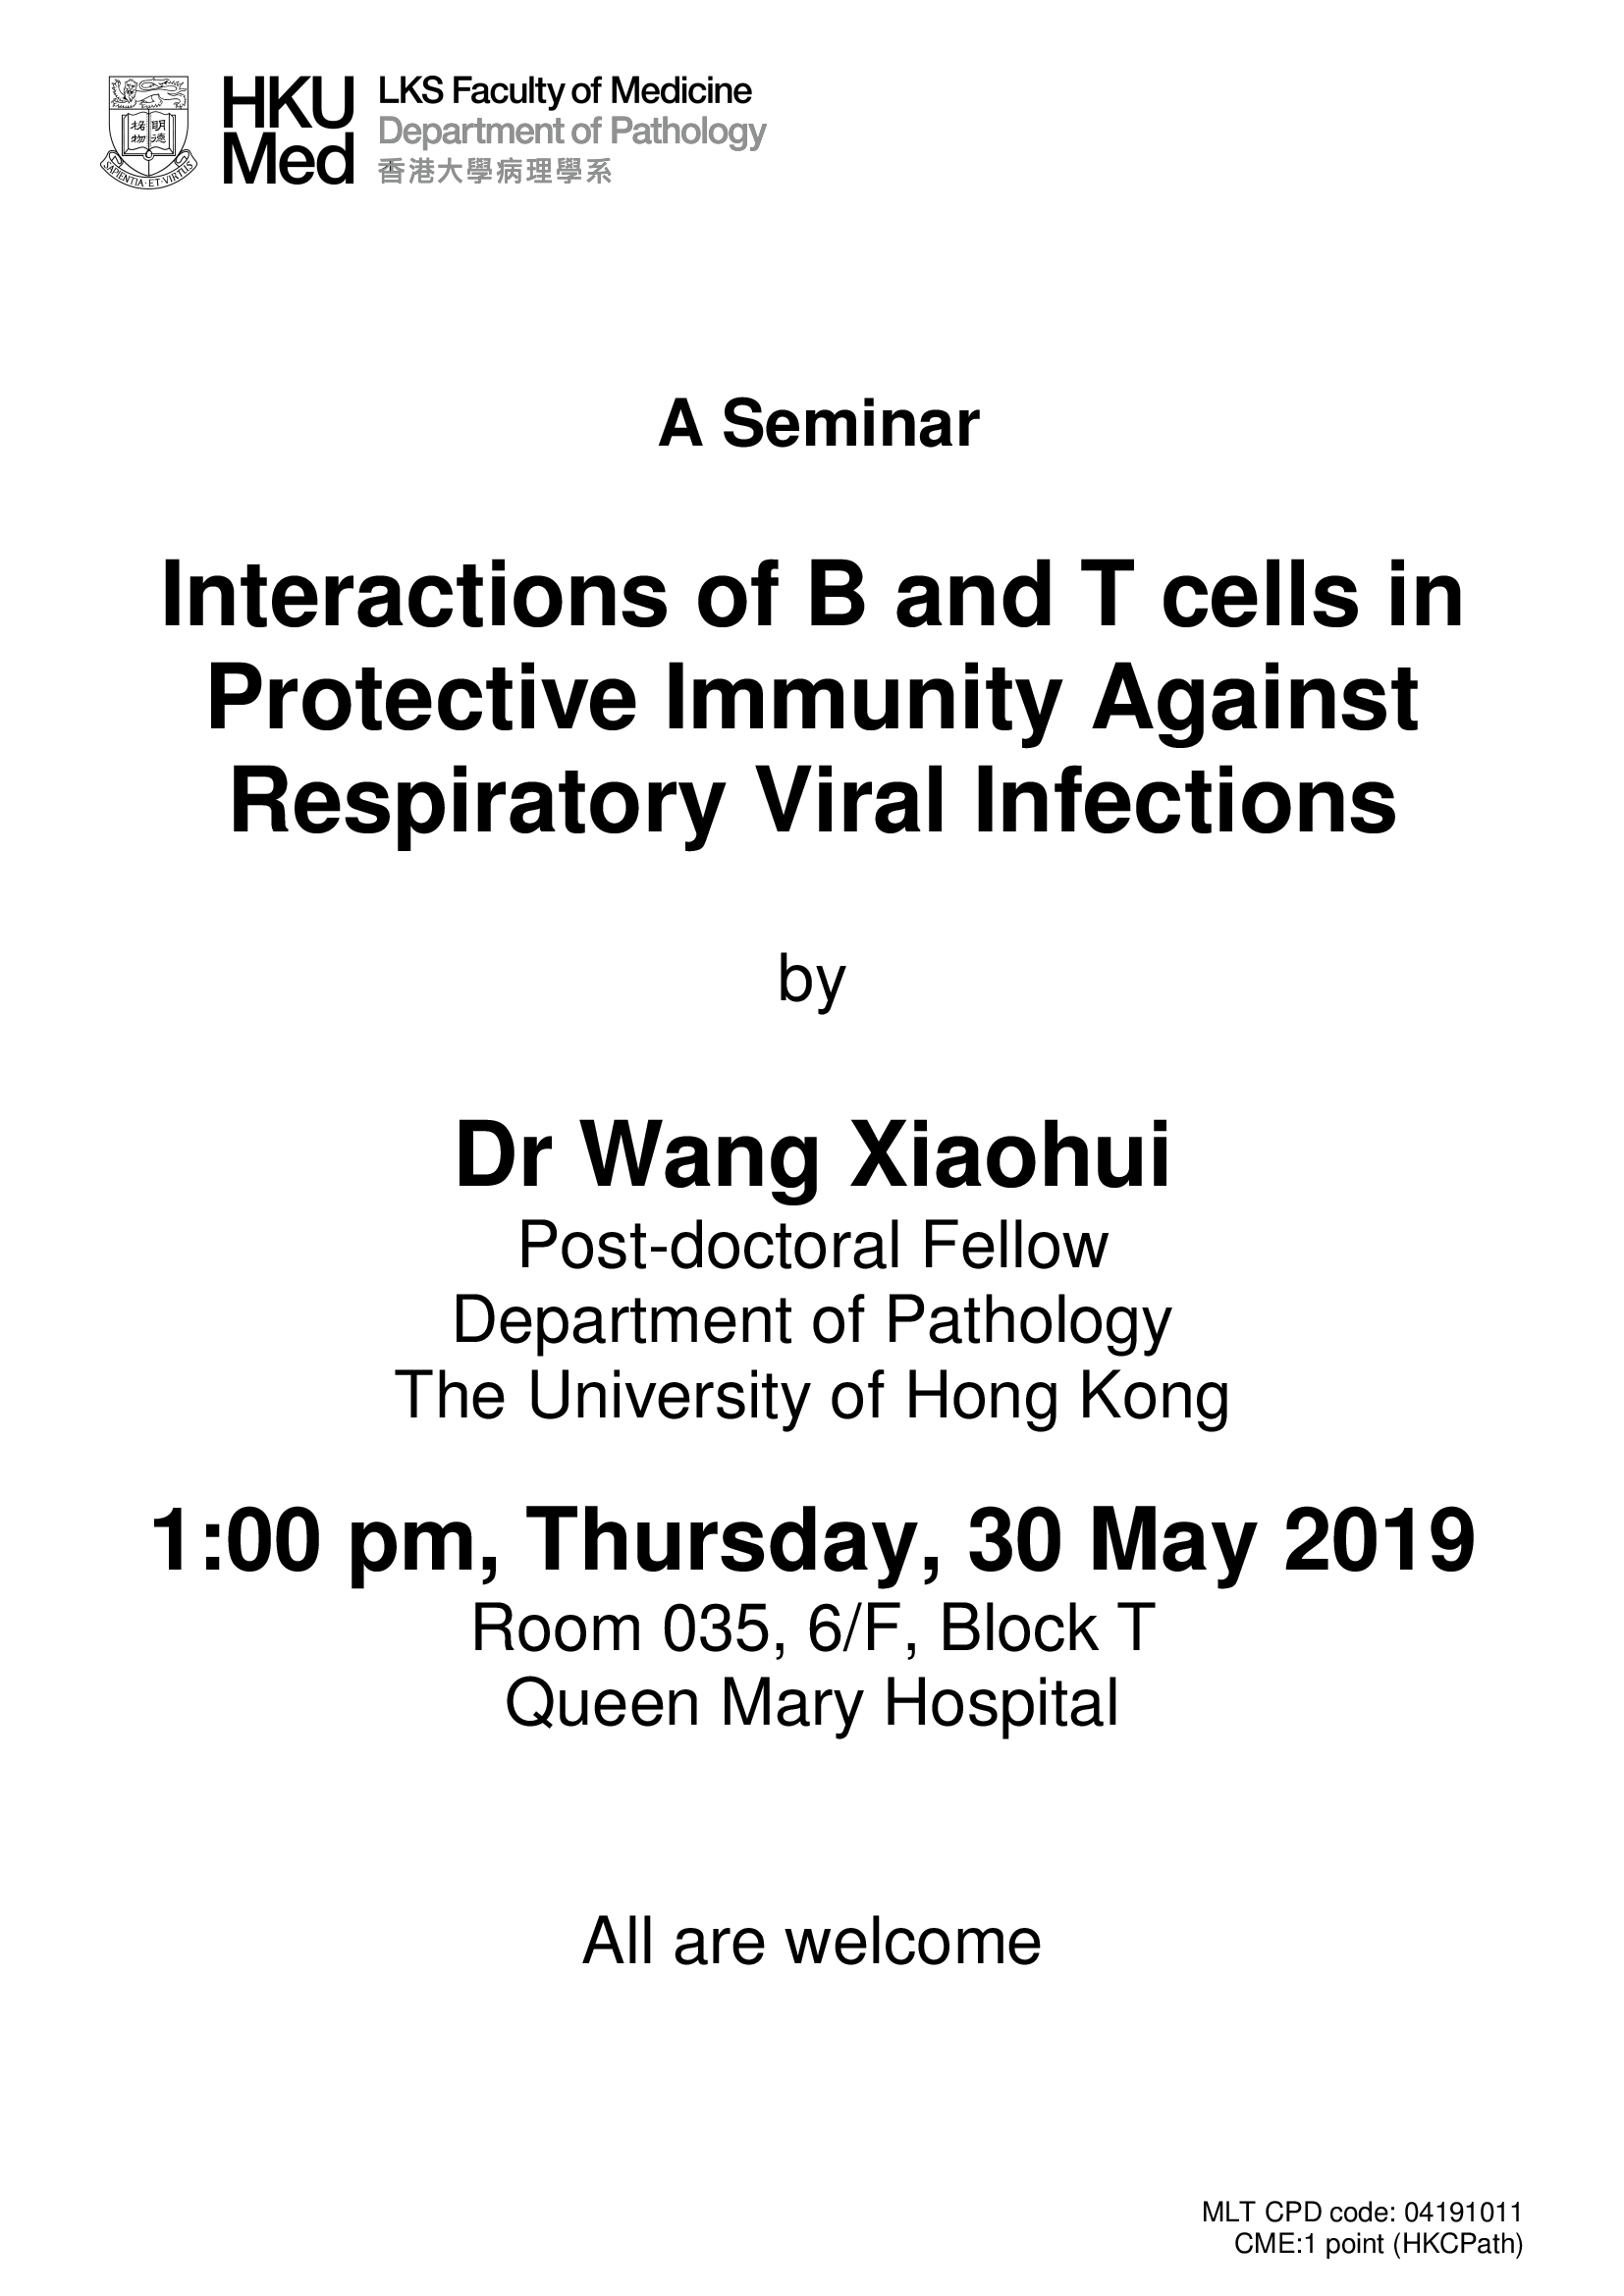 A Seminar by Dr Wang Xiaohui on 30 May (1 pm)